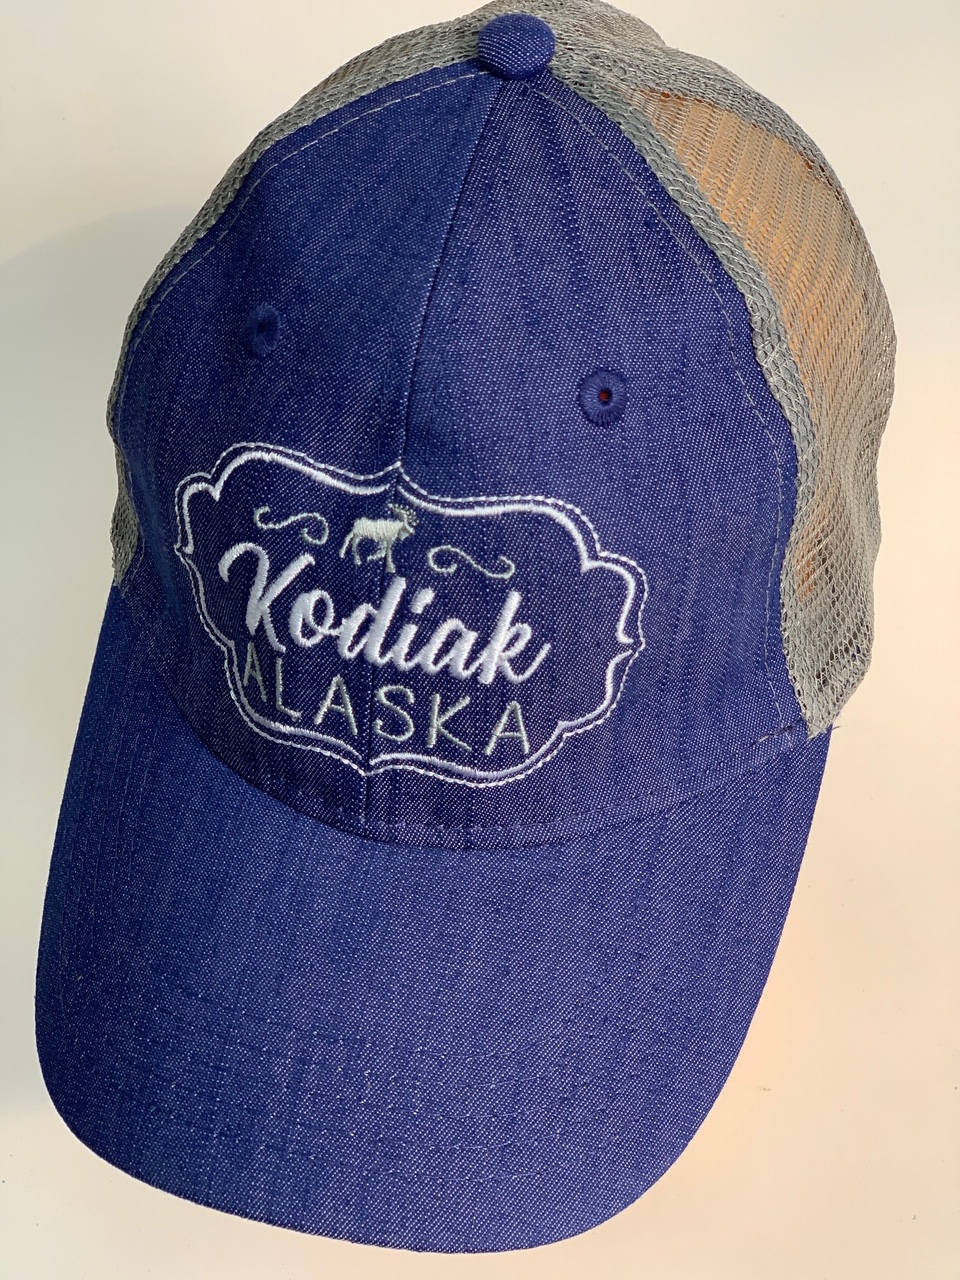 Джинсовая бейсболка с сеткой Kodiak Alaska